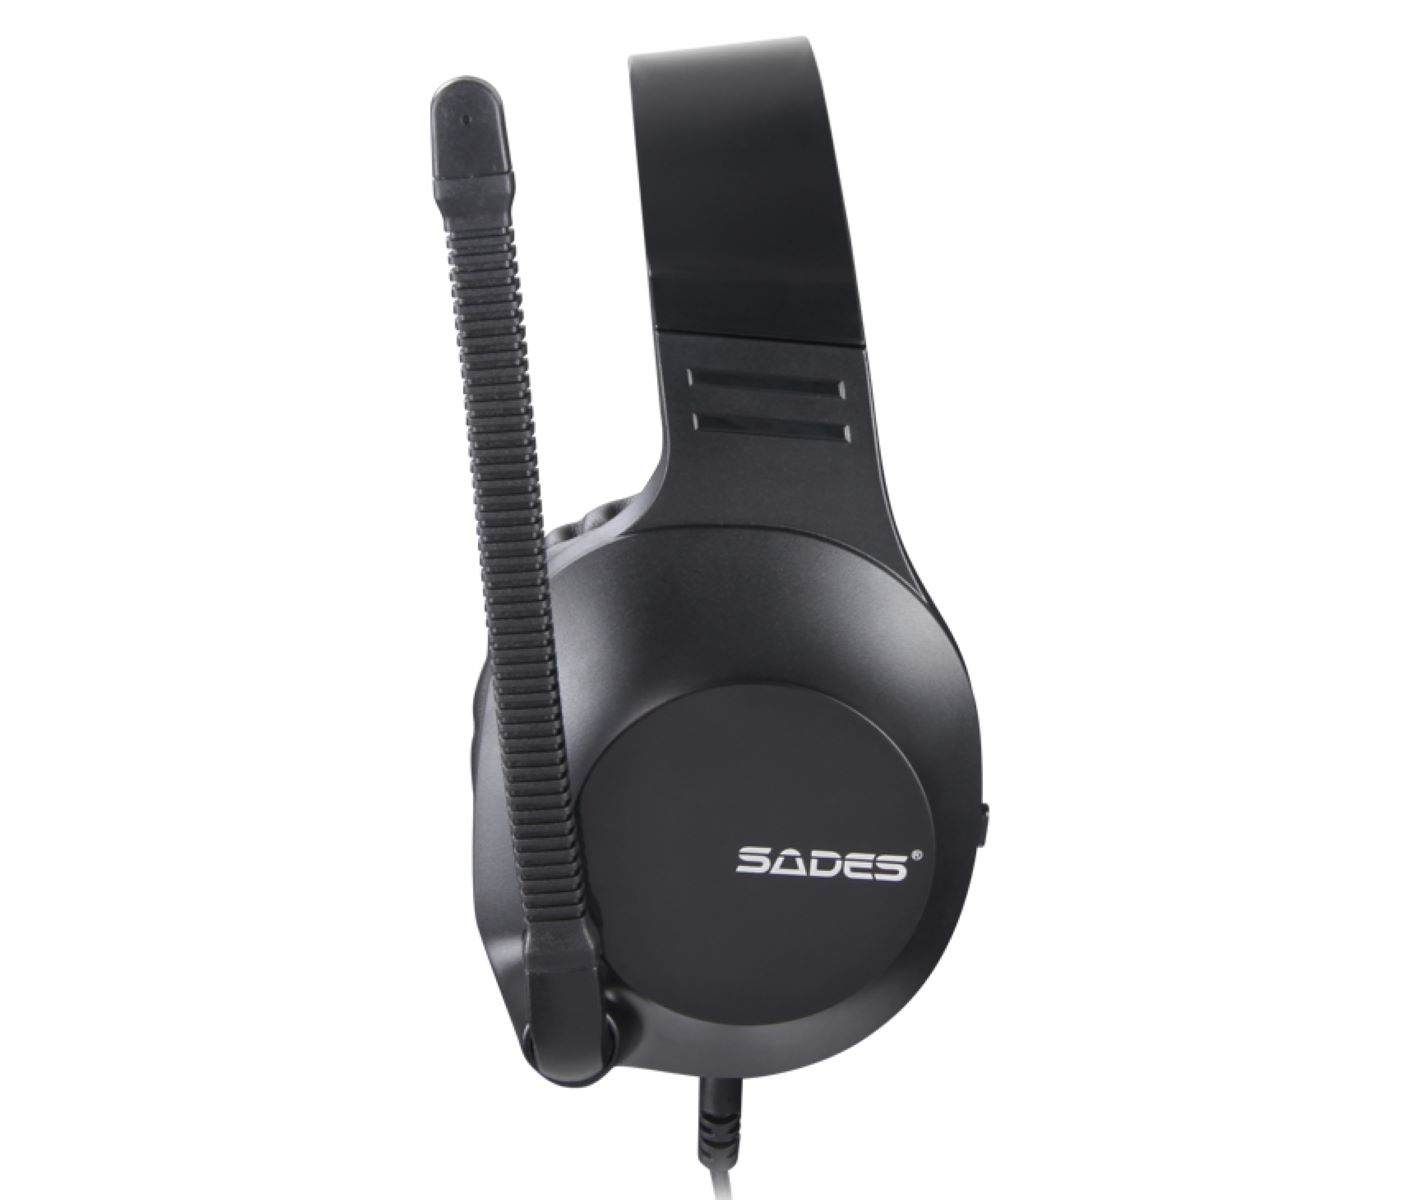 Spirits schwarz SA-721, Over-ear Gaming-Headset SADES